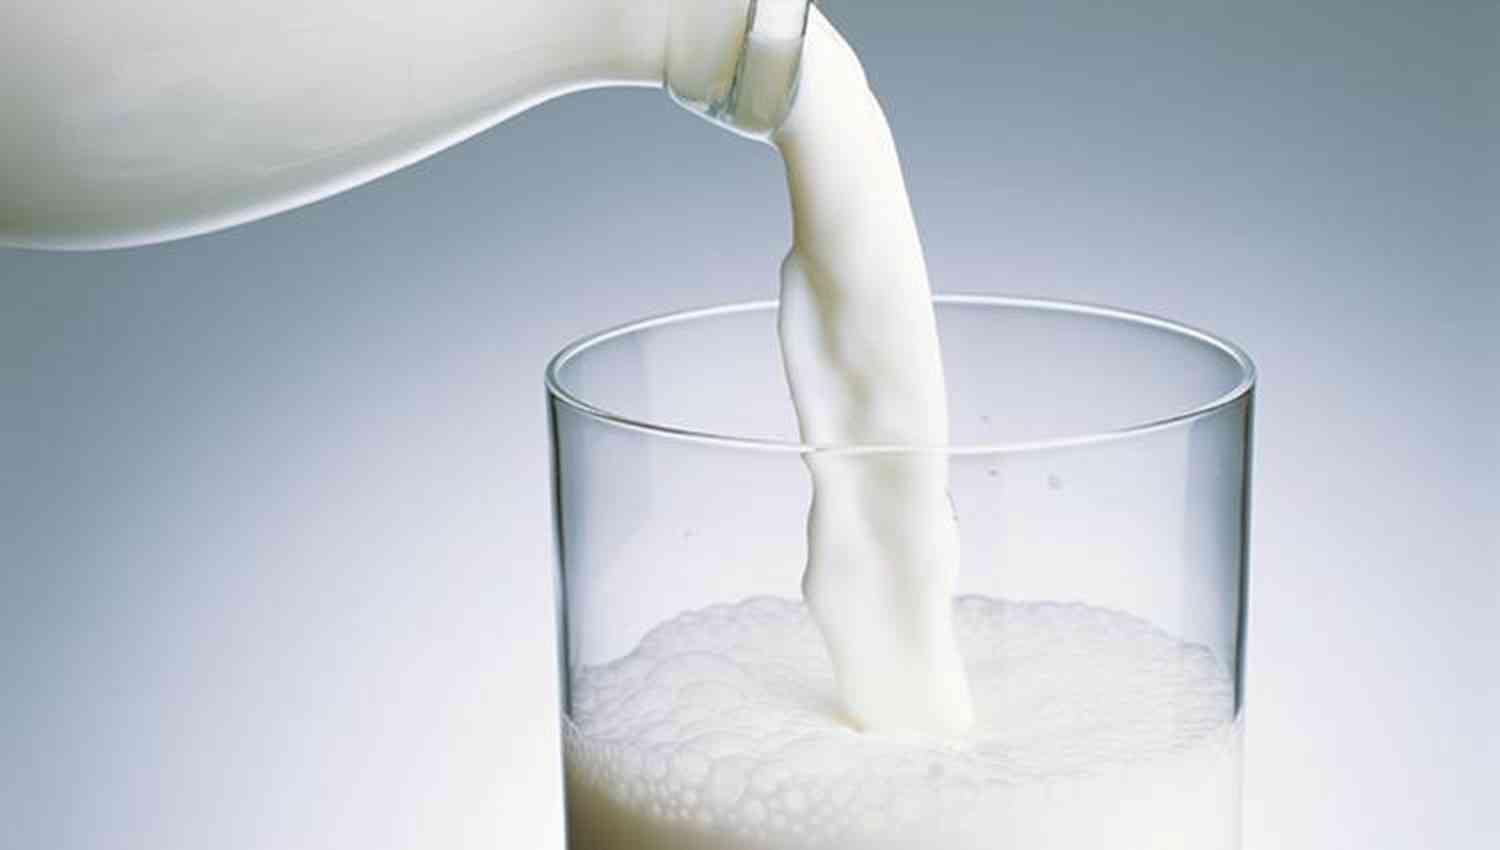 سم قاتل.. احذر شرب الحليب بهذه الطريقة يعرض حياتك للخطر